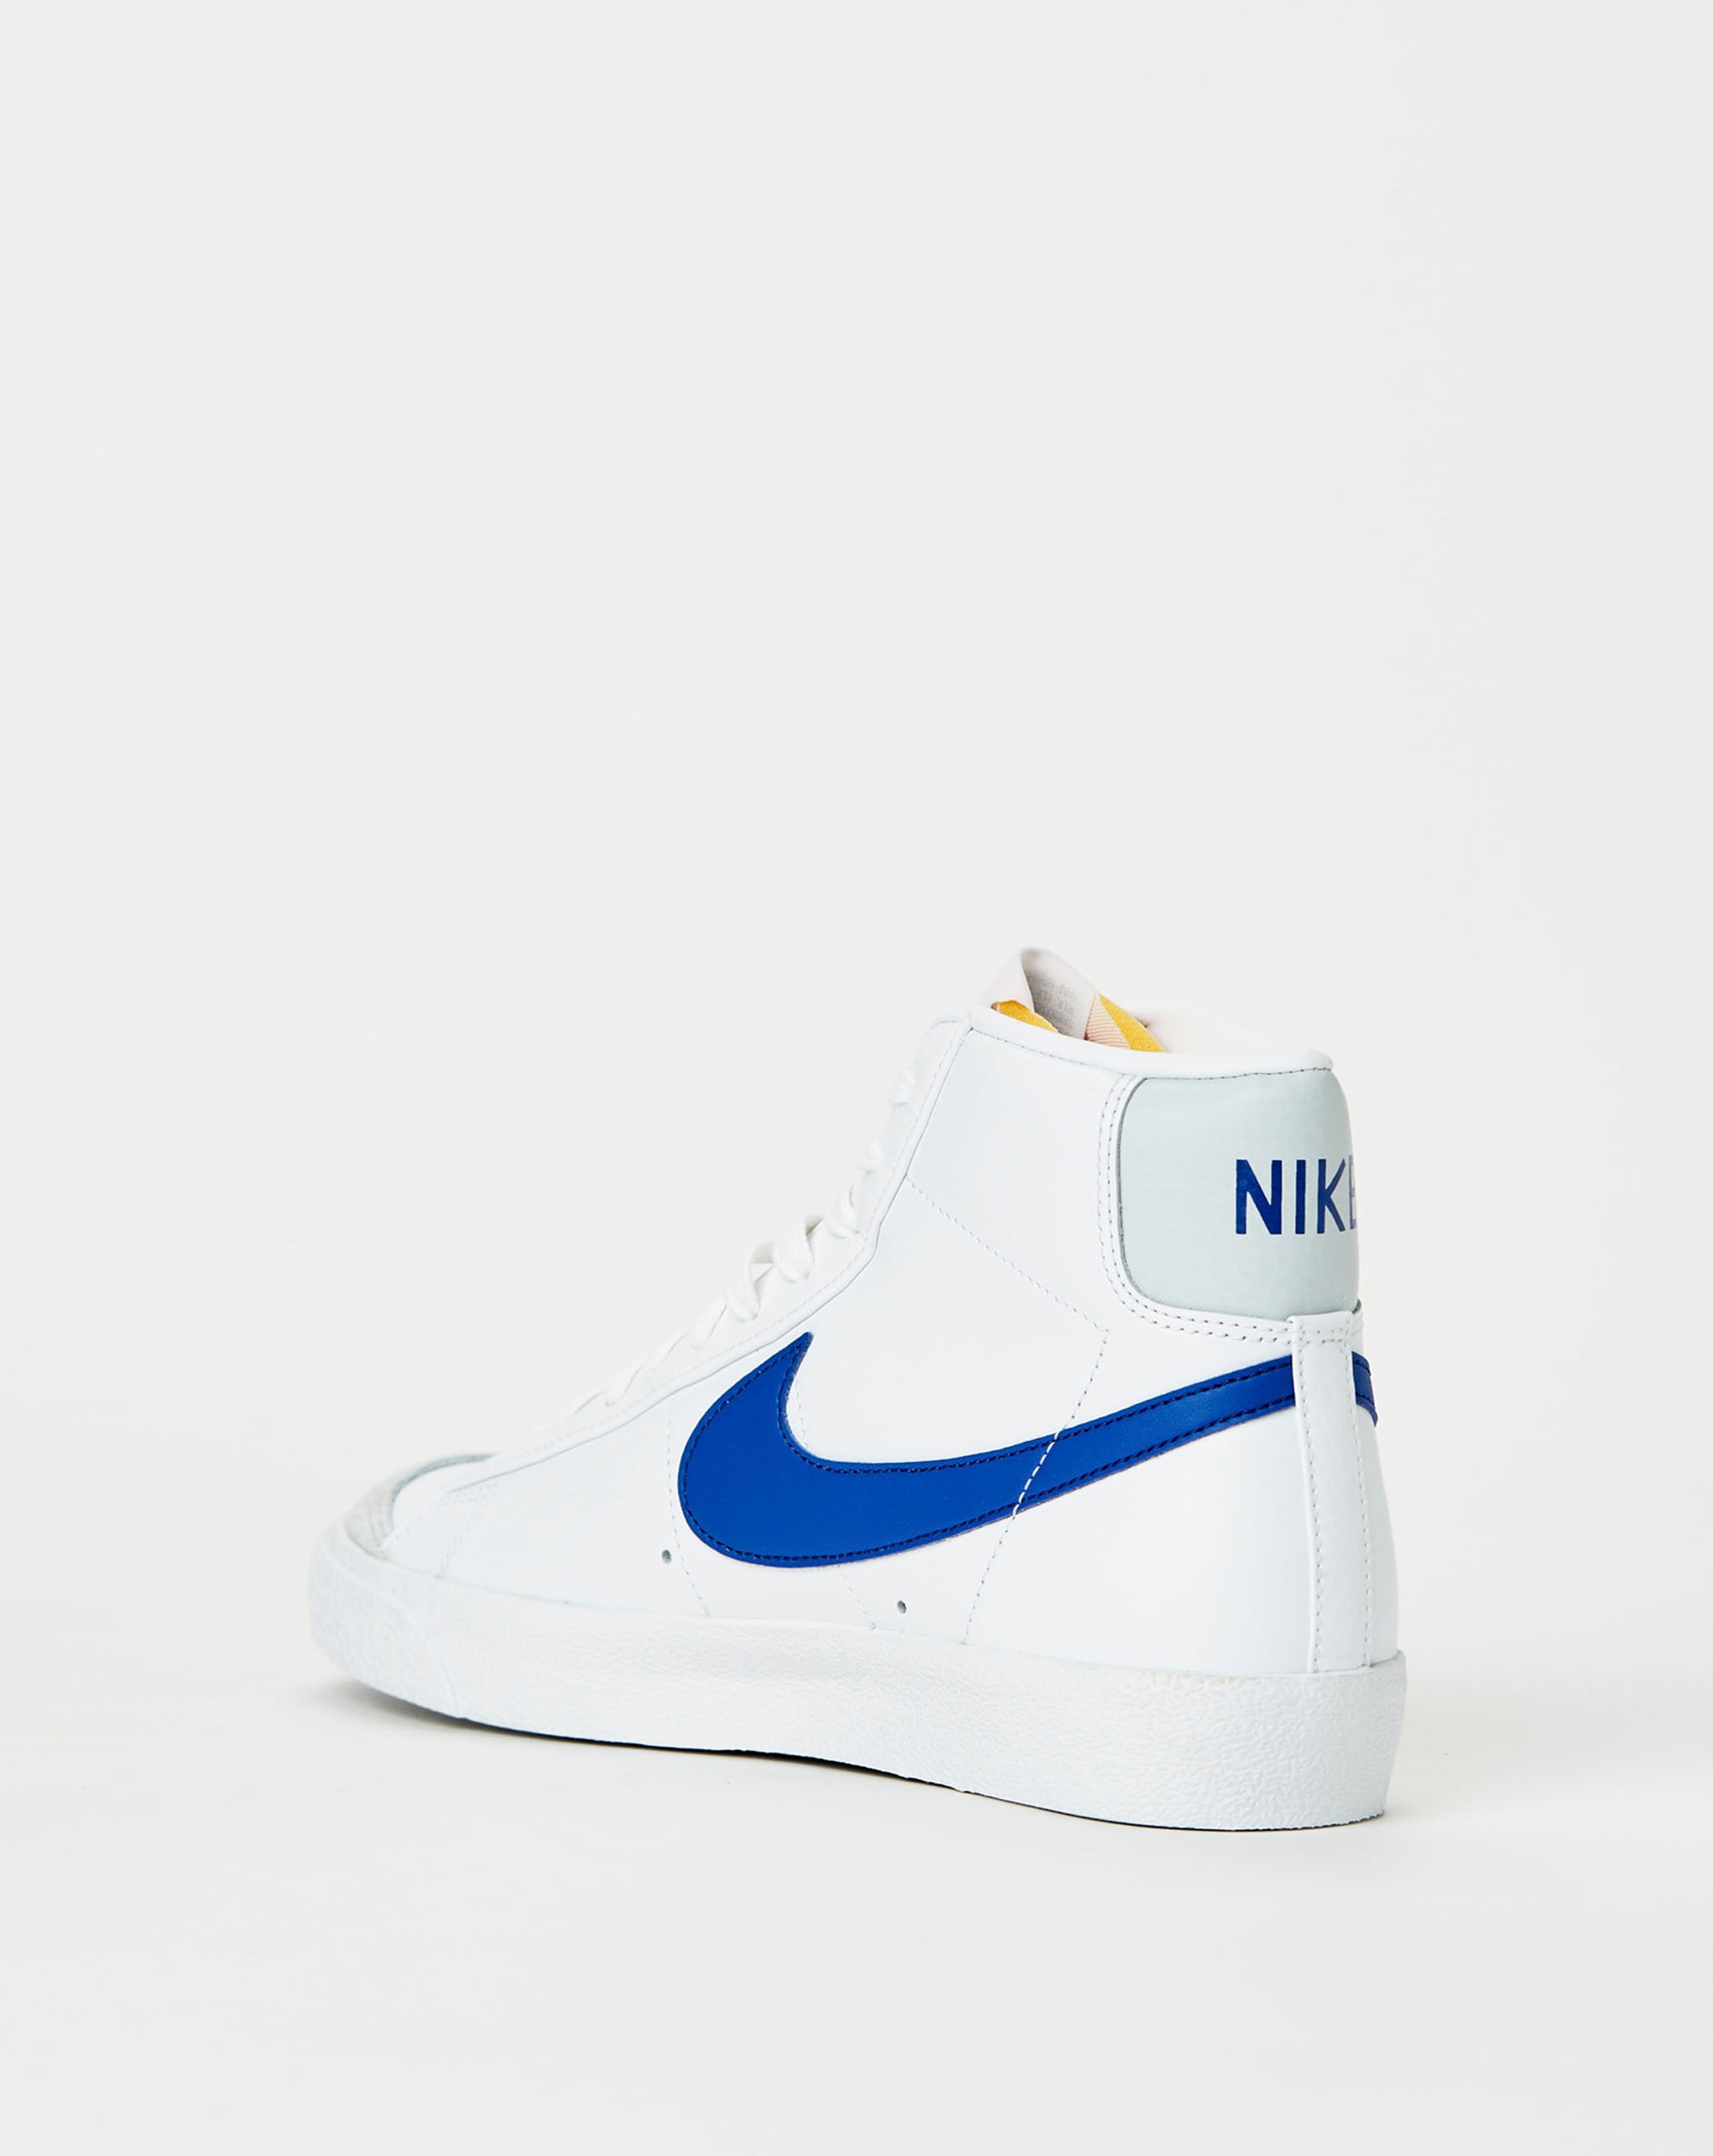 Nike Blazer Mid '77 Vintage - Rule of Next Footwear